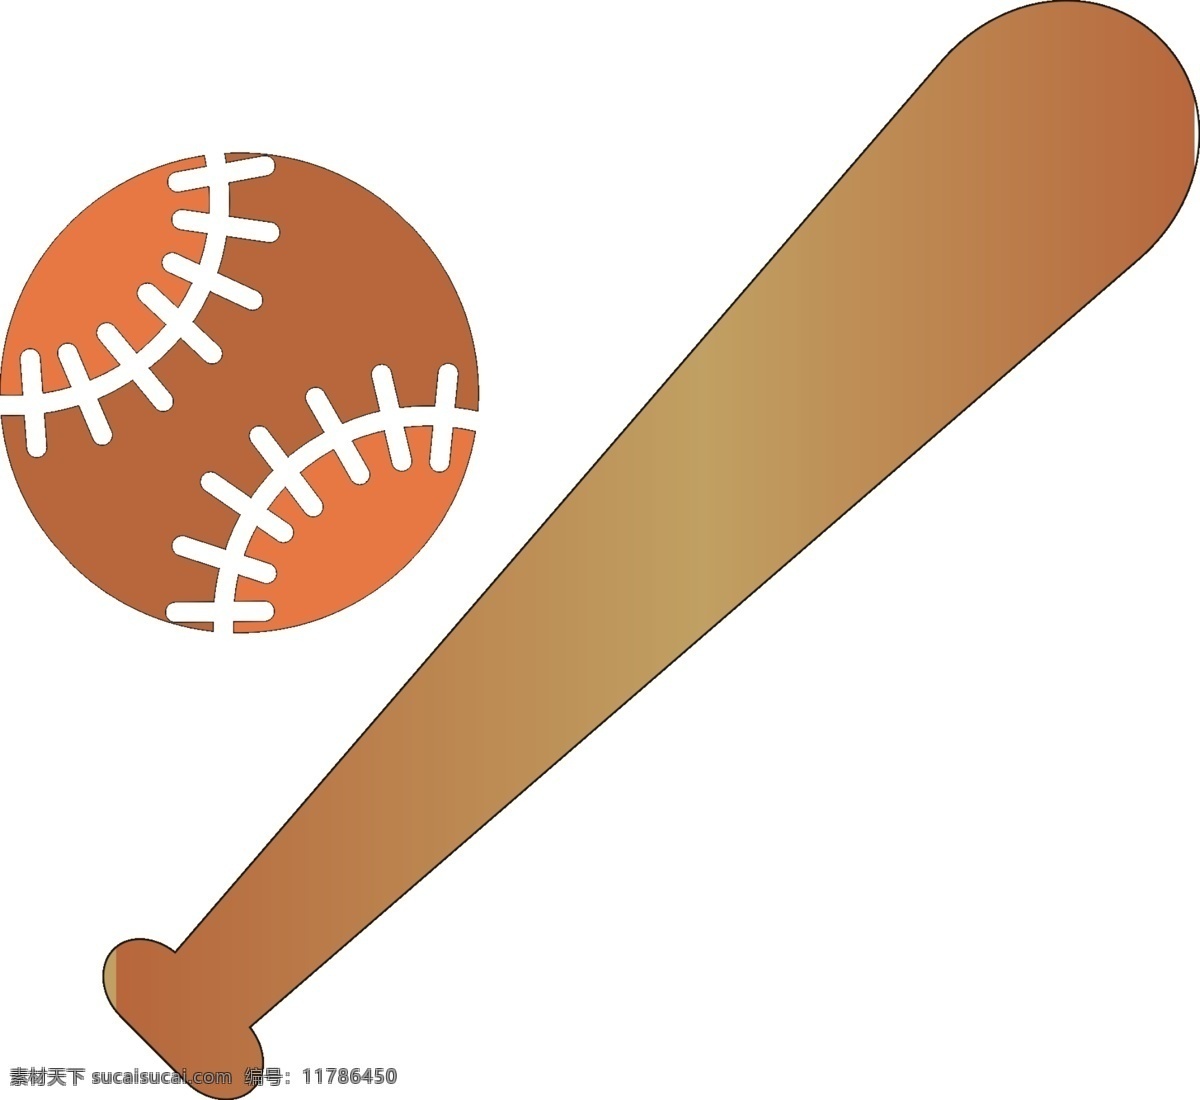 棒球棍图片 棒球棍图标 卡通棒球棍 棒球棍素材 图标 生活百科 体育用品